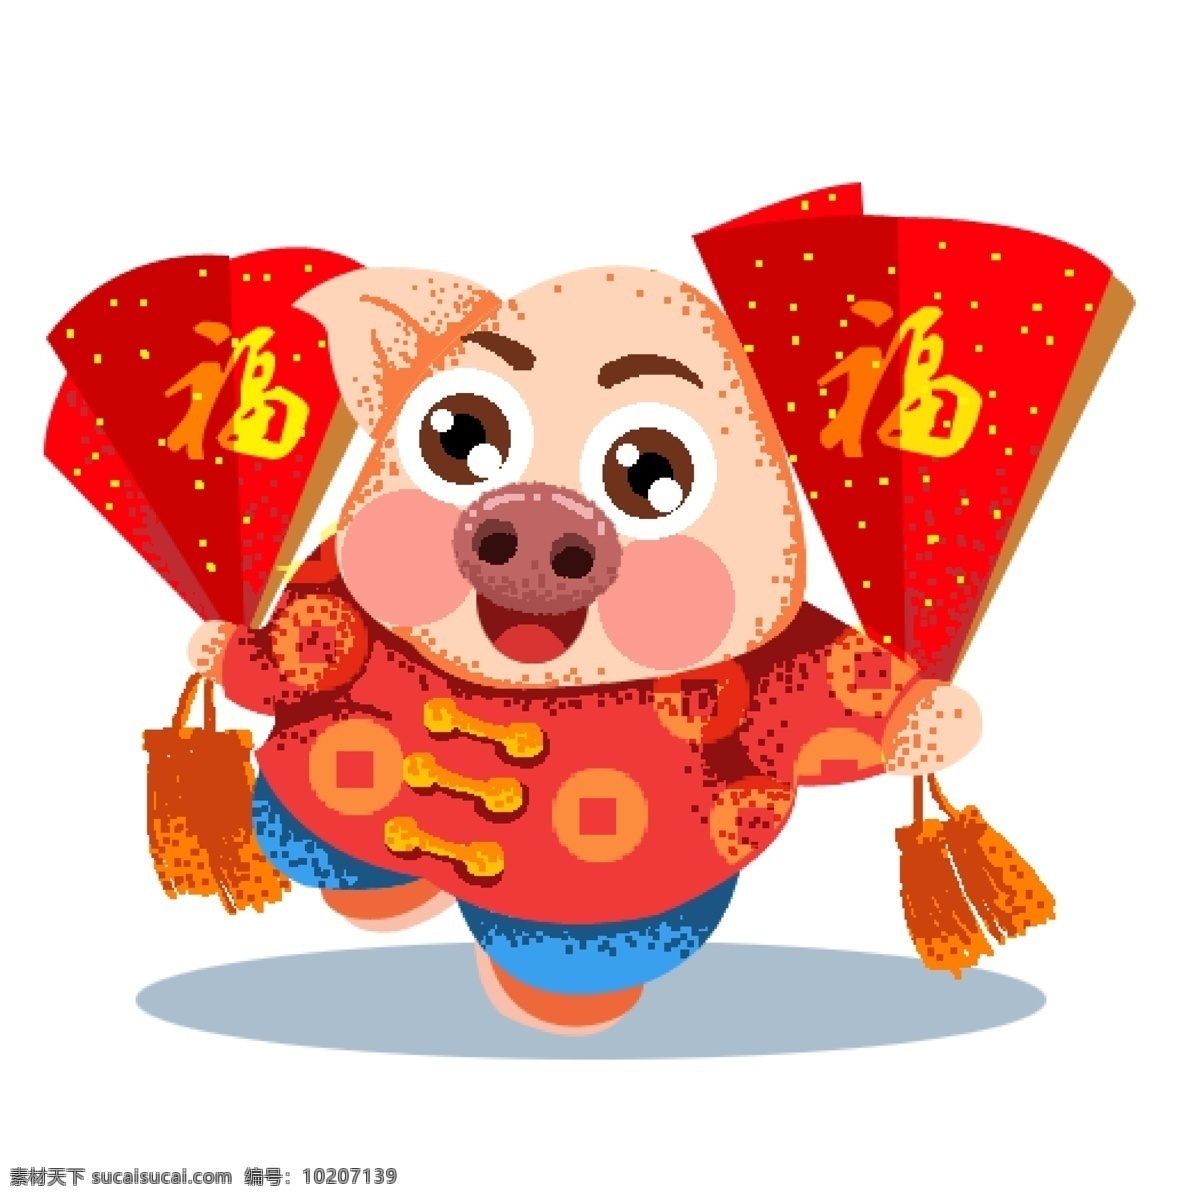 过年 扇子 猪 喜庆 复古 中国风 插画 像素化 春节元素 2019年 新年 猪年 小猪形象 猪年形象